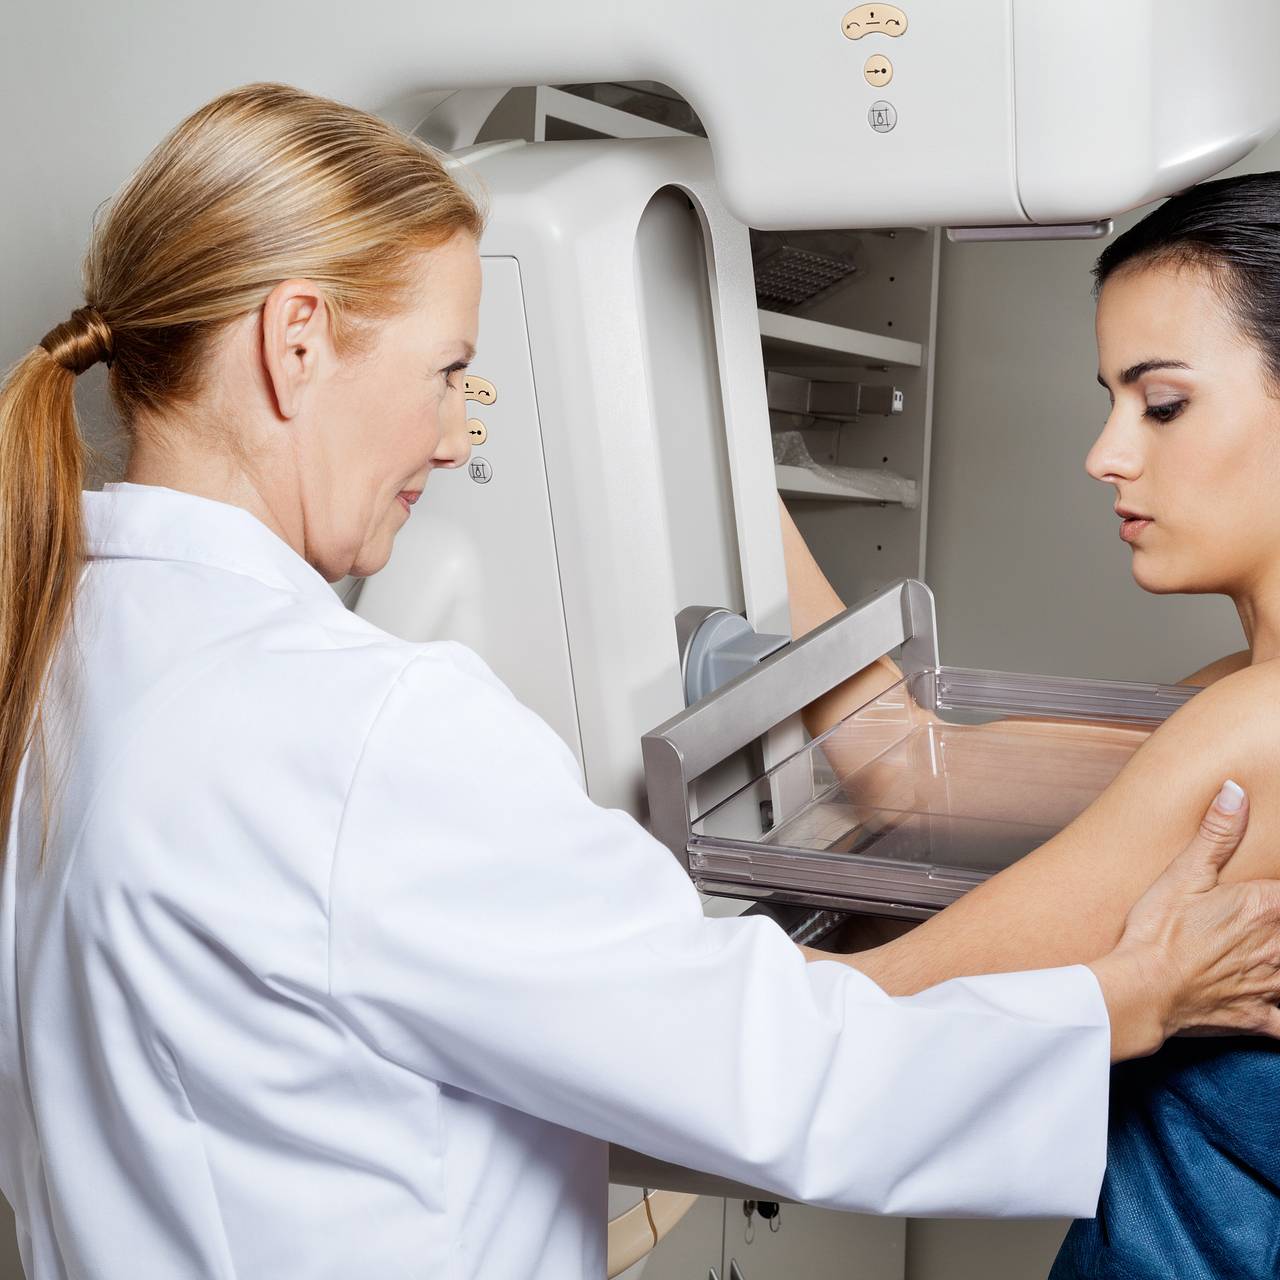 Консультация маммолога. Обследование груди. Маммолог фото. Кабинет маммографии. Как сделать маммографию в поликлинике